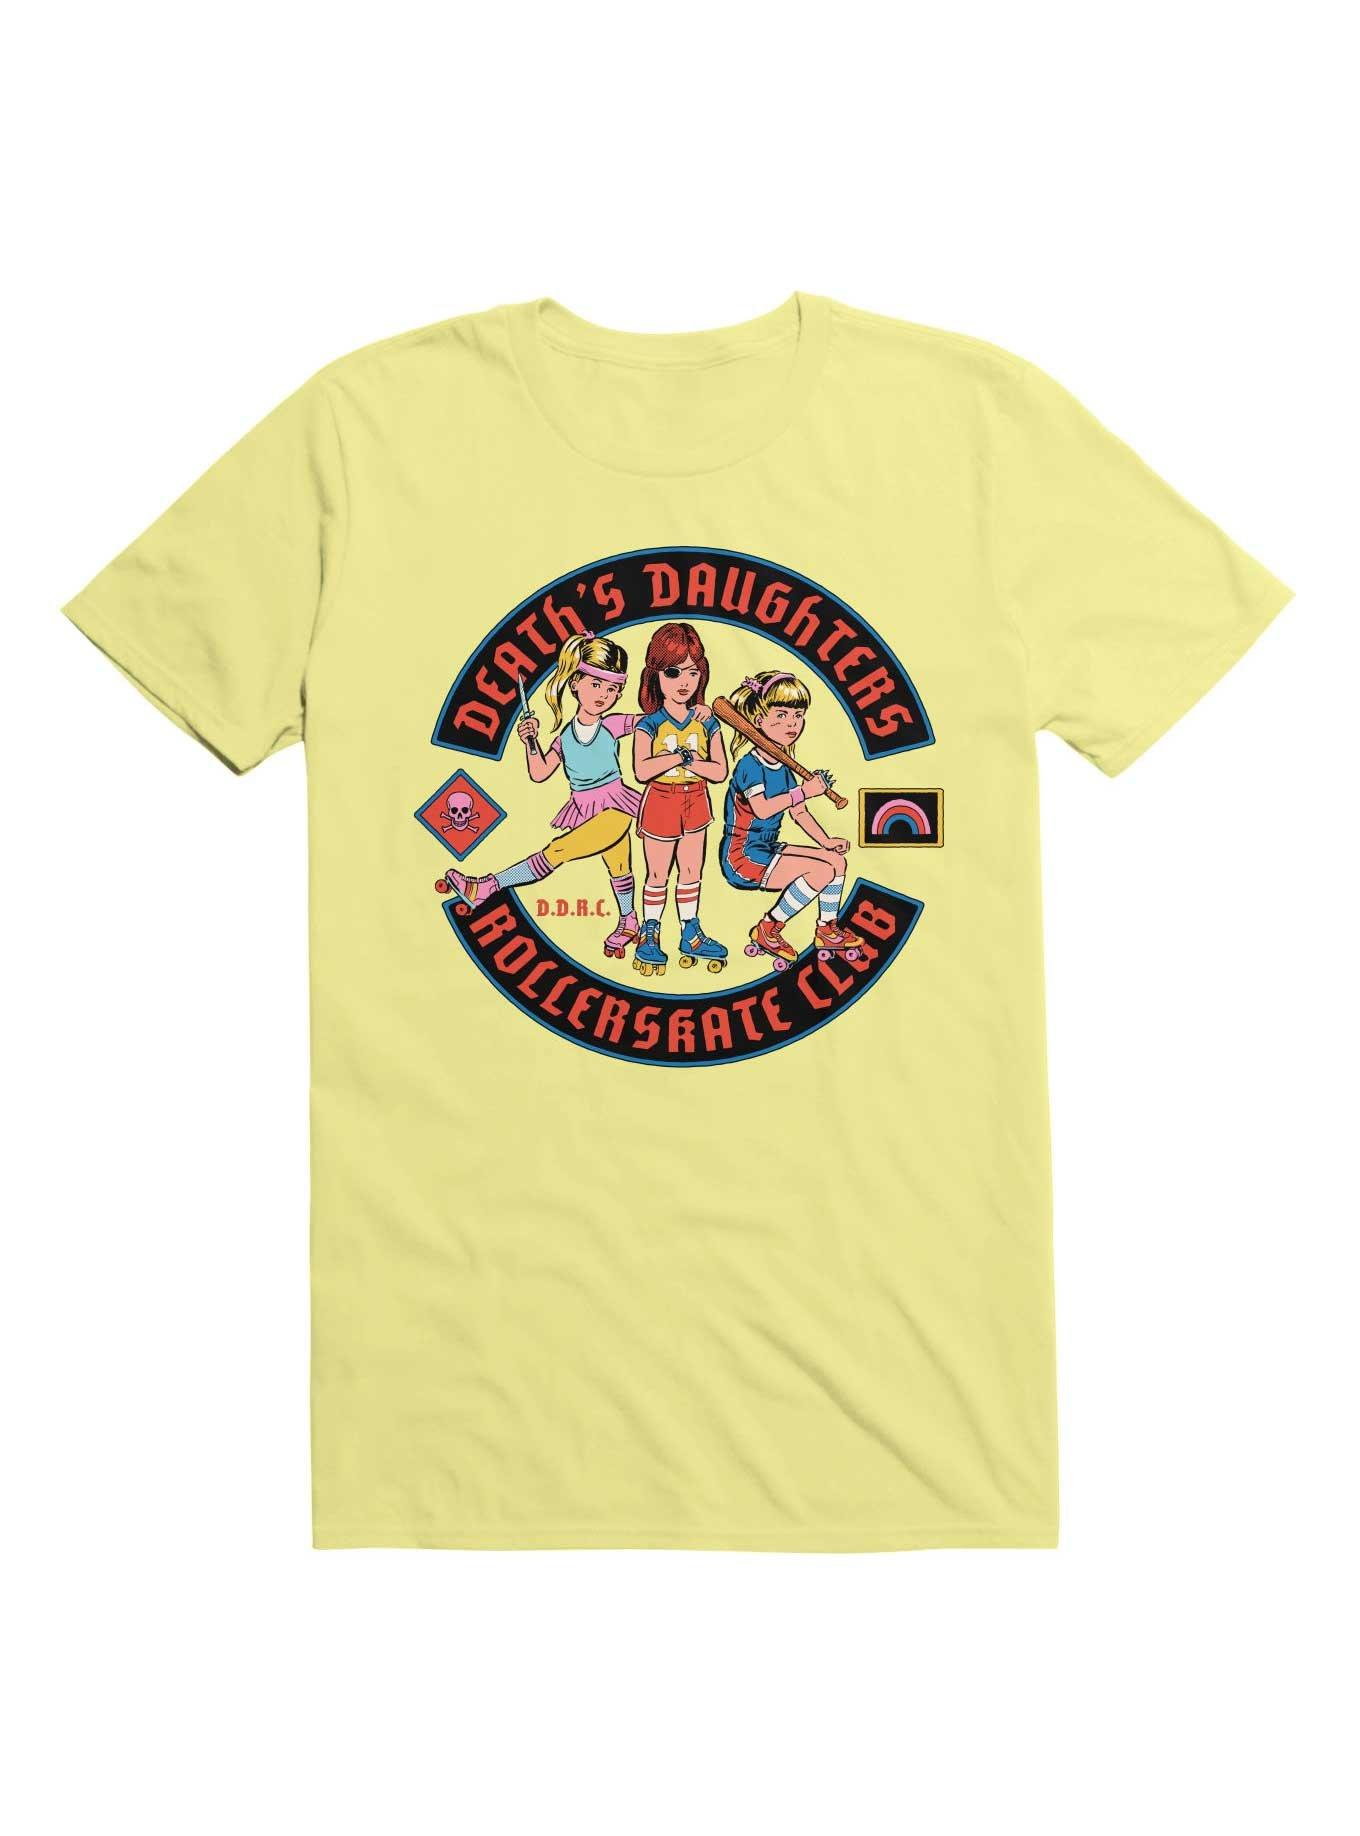 D.D.R.C. T-Shirt By Steven Rhodes, , hi-res